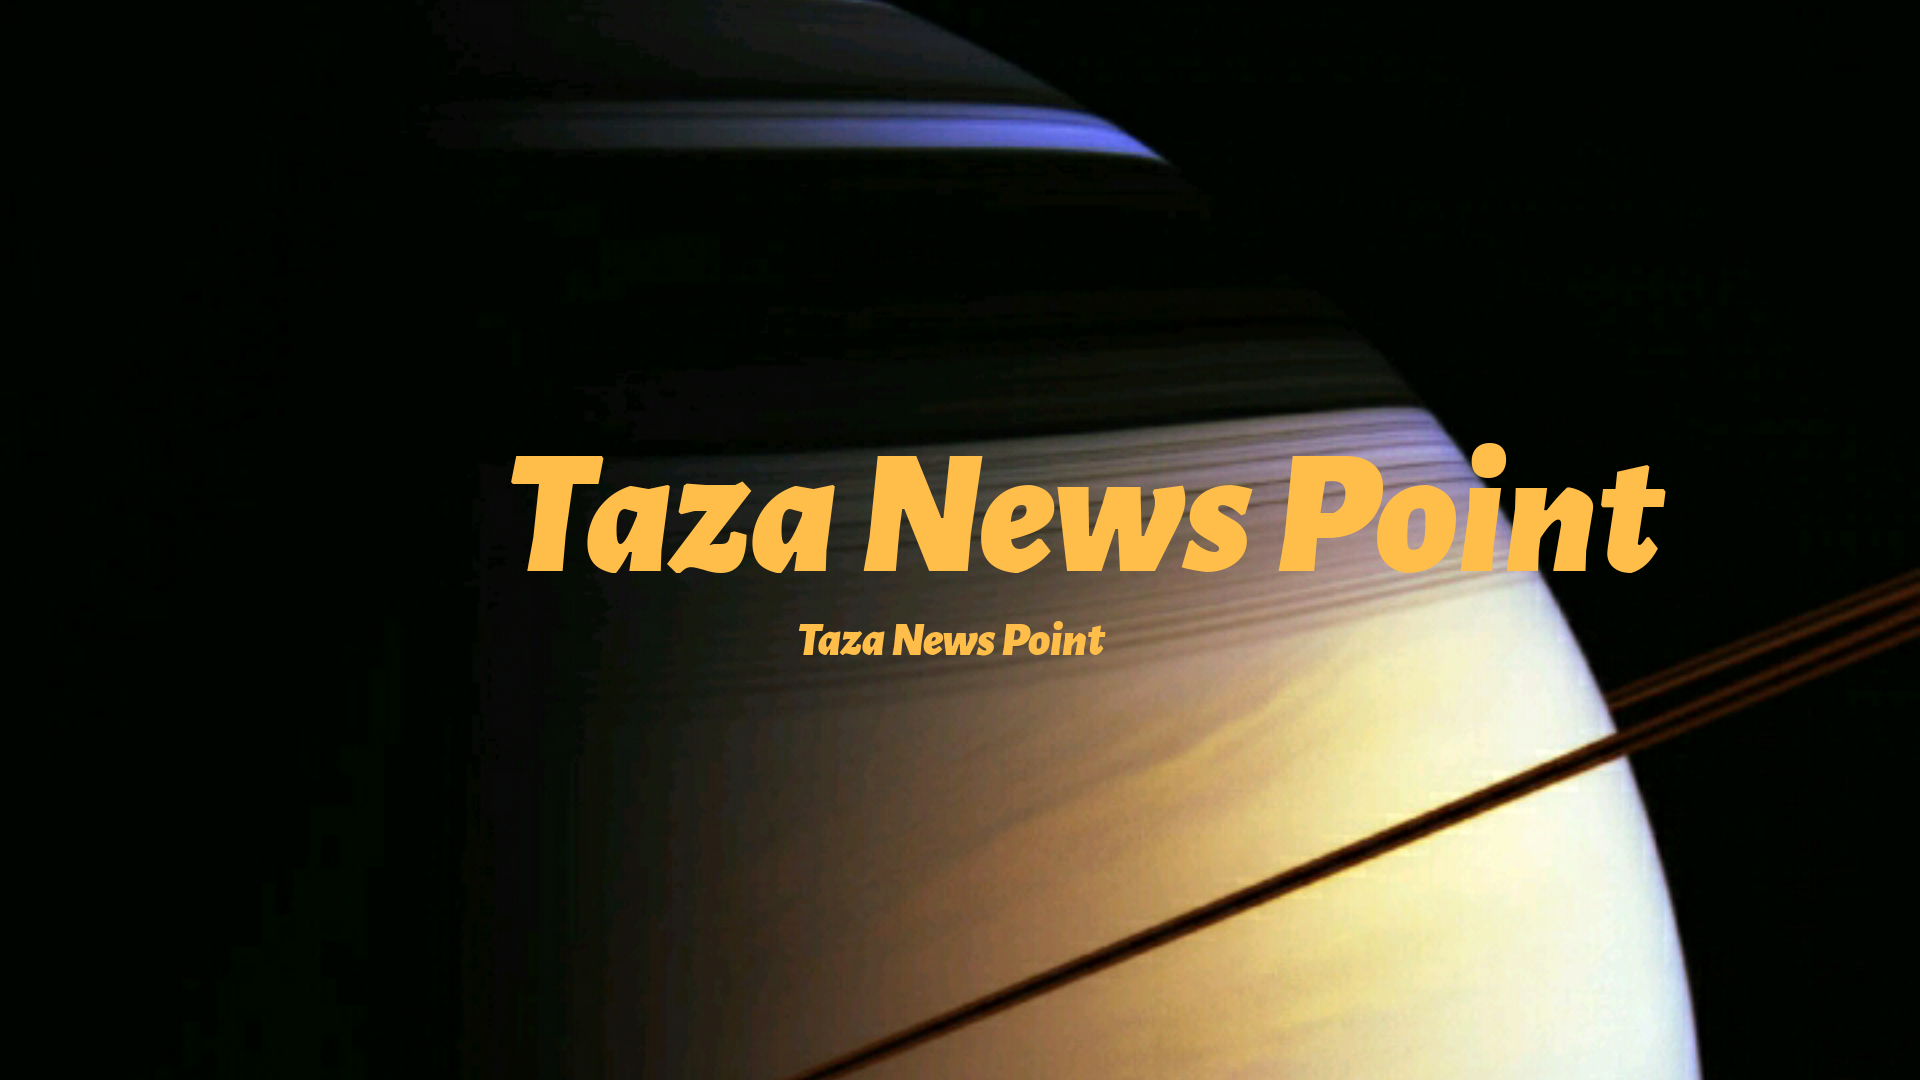 Taza News Point